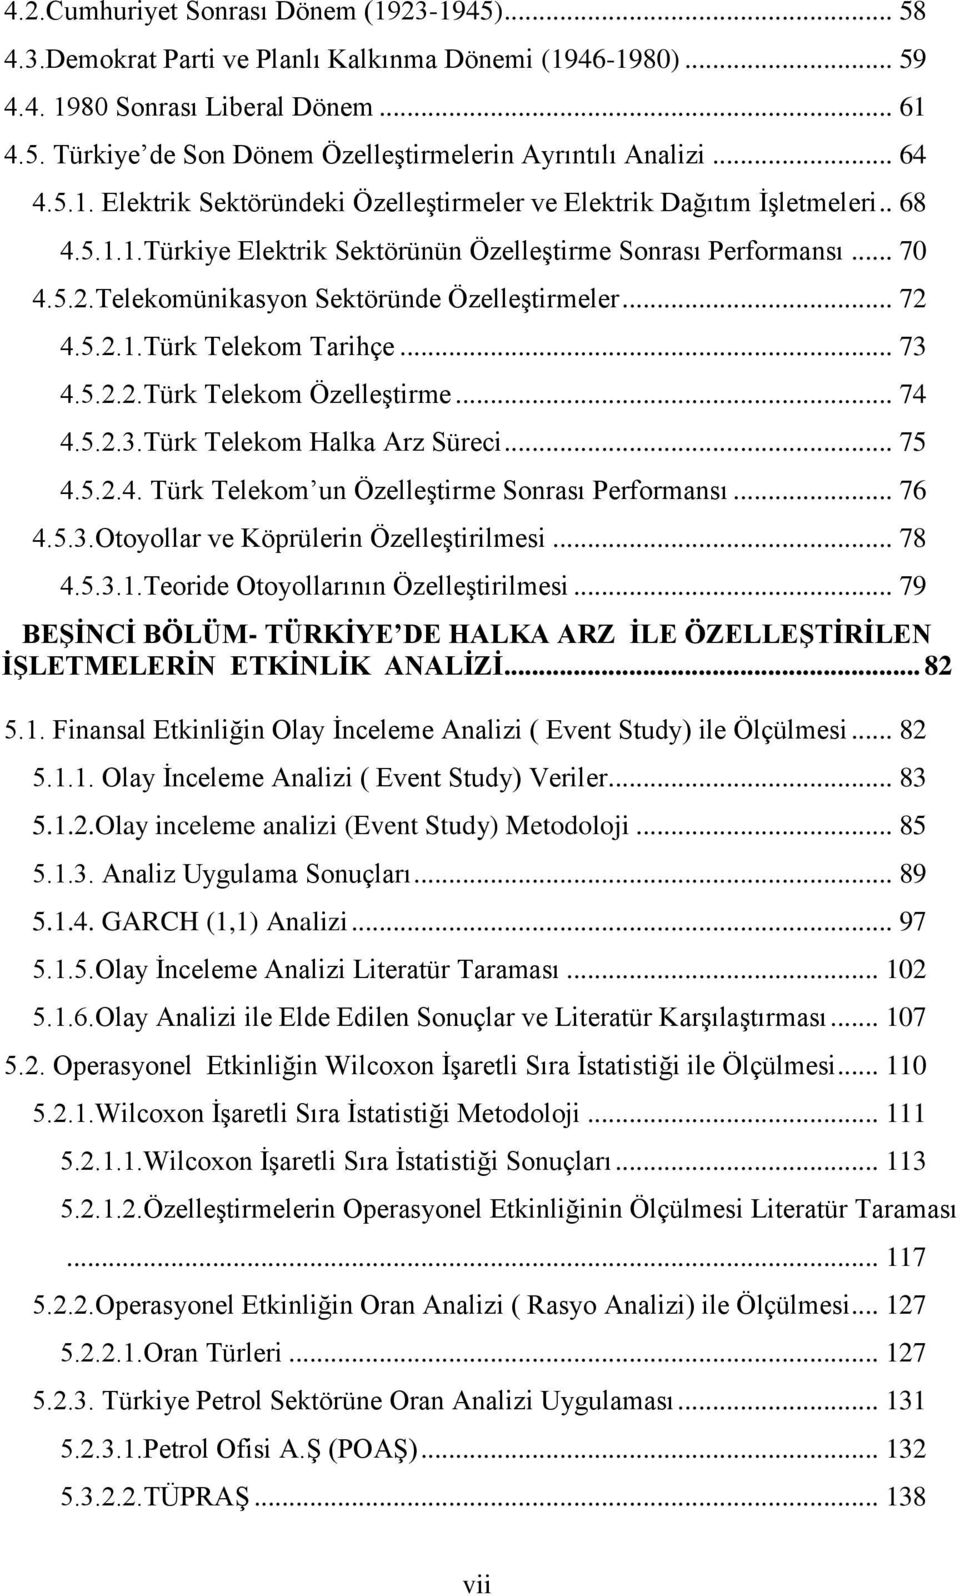 Telekomünikasyon Sektöründe ÖzelleĢtirmeler... 72 4.5.2.1.Türk Telekom Tarihçe... 73 4.5.2.2.Türk Telekom ÖzelleĢtirme... 74 4.5.2.3.Türk Telekom Halka Arz Süreci... 75 4.5.2.4. Türk Telekom un ÖzelleĢtirme Sonrası Performansı.